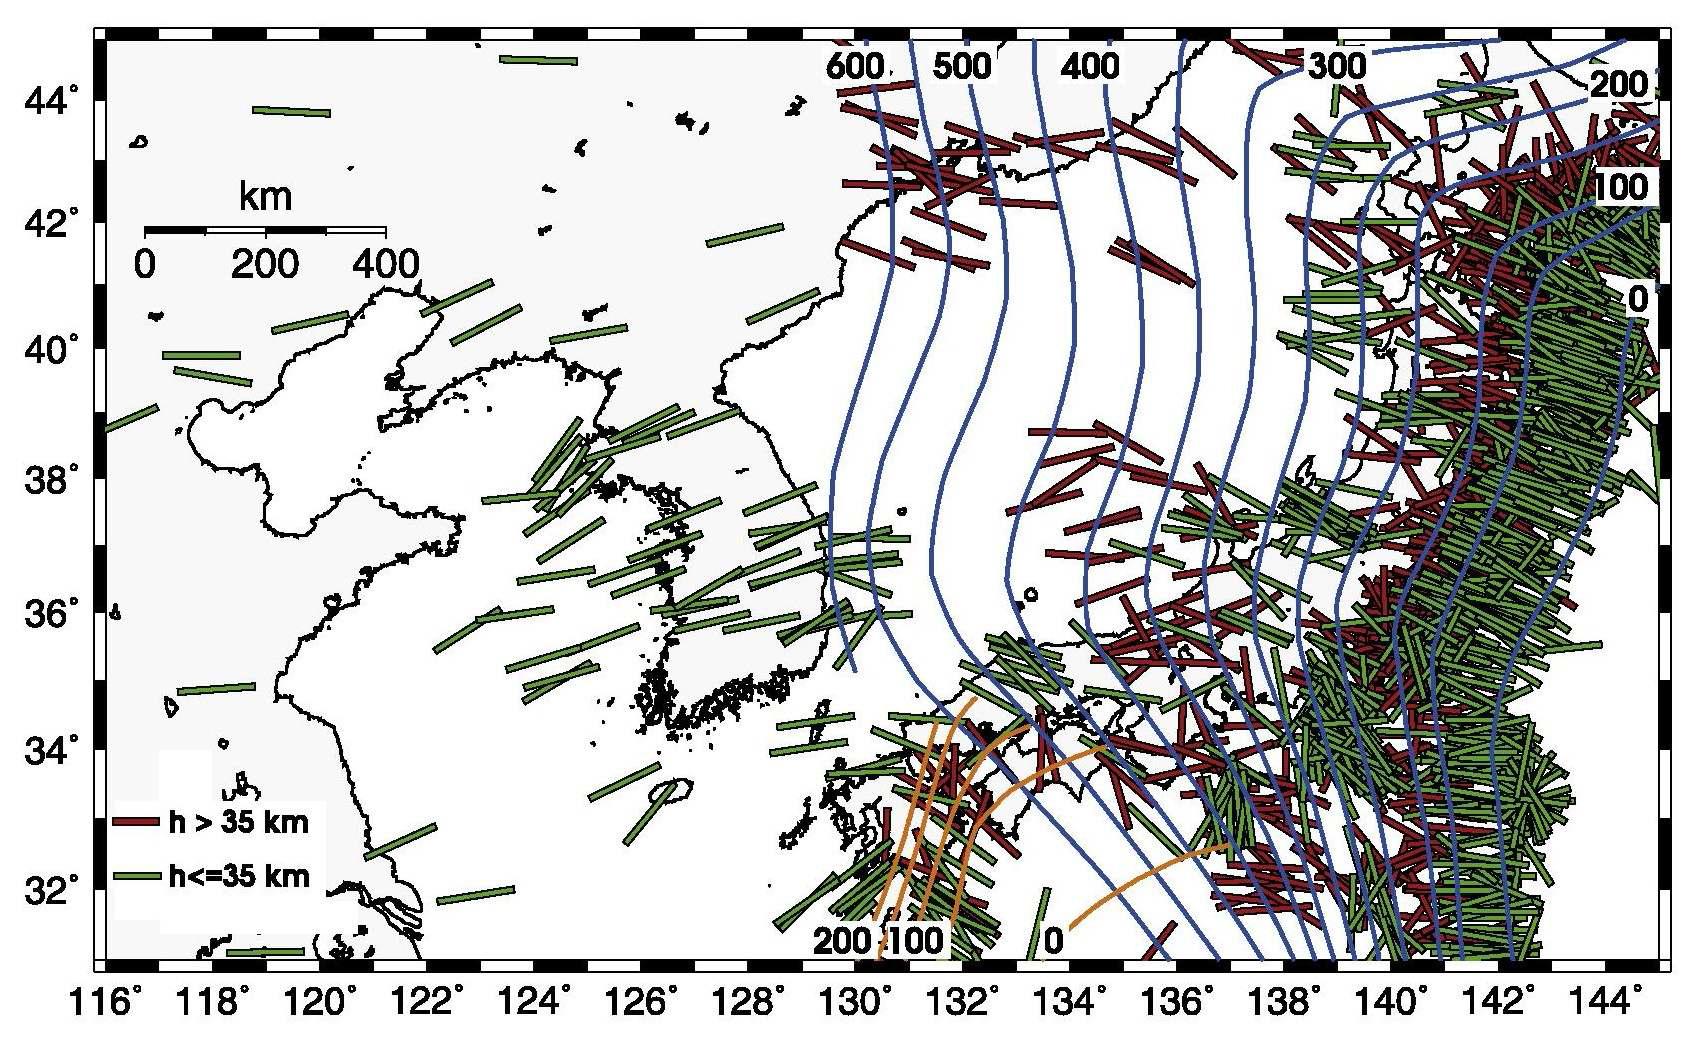 단층 면 해로부터 추론된 동해, 한반도 그리고 일본 주변의 압축력 축 방향. 붉은 막대는 35 km 이 상의 깊이에서 발생한 지진의 압축력 축 방향을 지시한다. 반변에 초록 막대는 35 km 이하의 깊이에서 발생한 압축력 축 방향을 지시한다. 태평양 판의 섭입 깊이는 푸른 등고선으로 표시되었고 필리핀 판은 주황 등고선 으로 표시되었다.